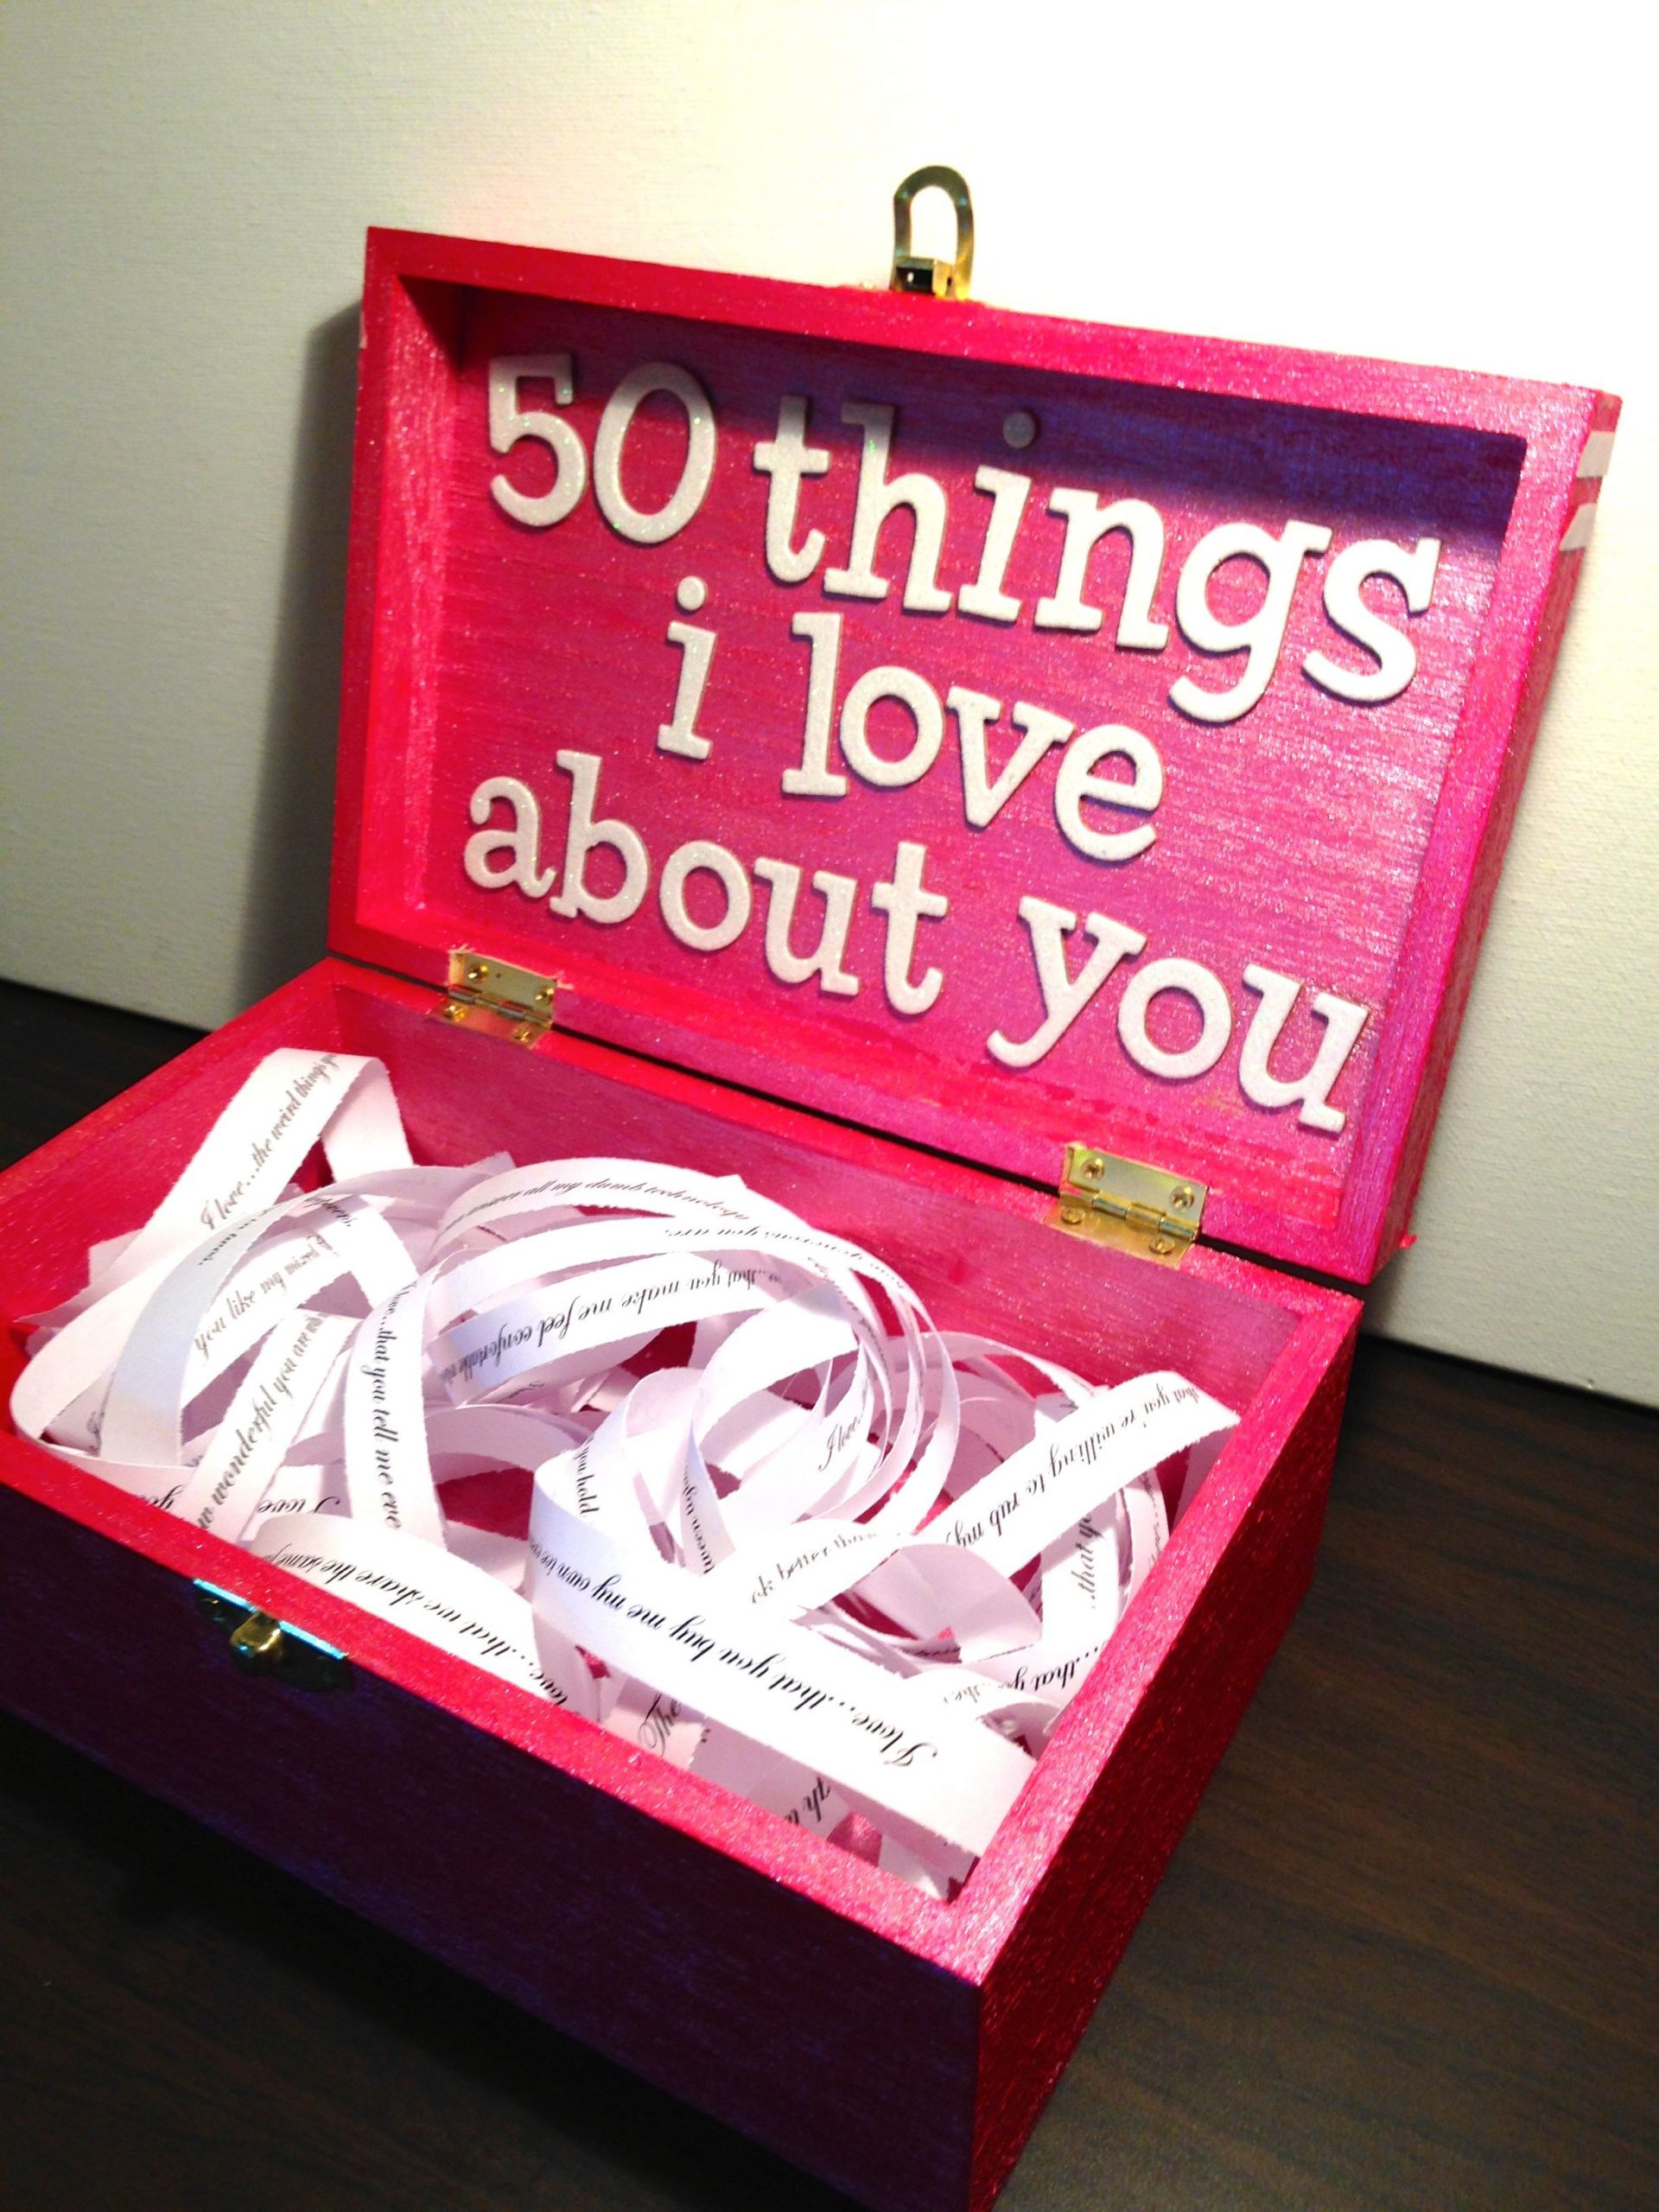 Creative Gift Ideas For Girlfriends
 Boyfriend Girlfriend t ideas for birthday valentine